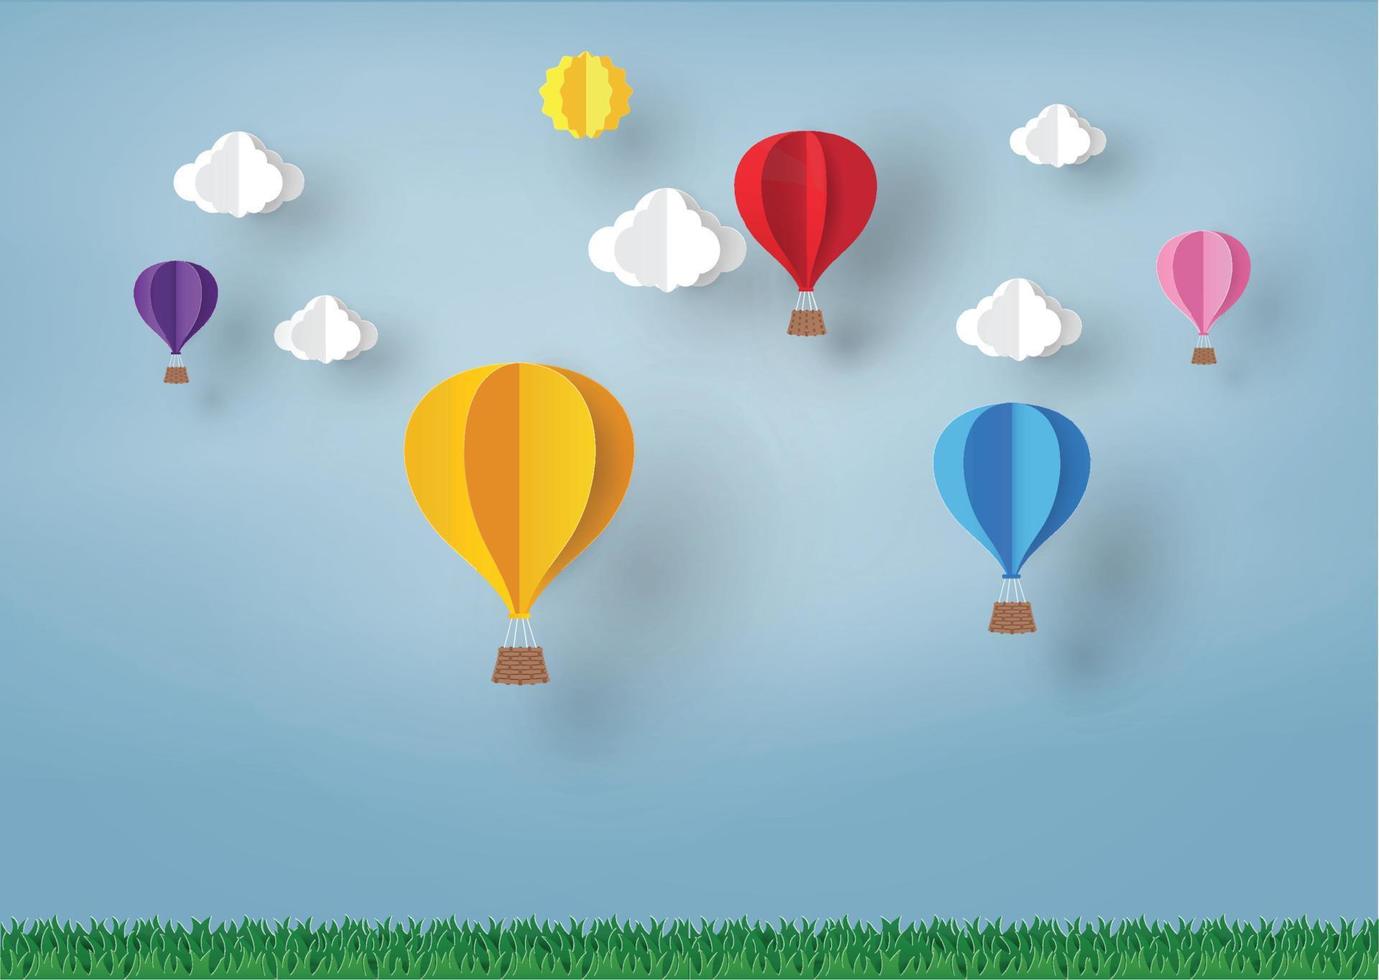 kleurrijke ballon en wolk in de blauwe lucht met papierkunstontwerp, vectorontwerpelement en illustratiekleurrijke ballon en wolk in de blauwe lucht met papierkunstontwerp, vectorontwerpelement vector